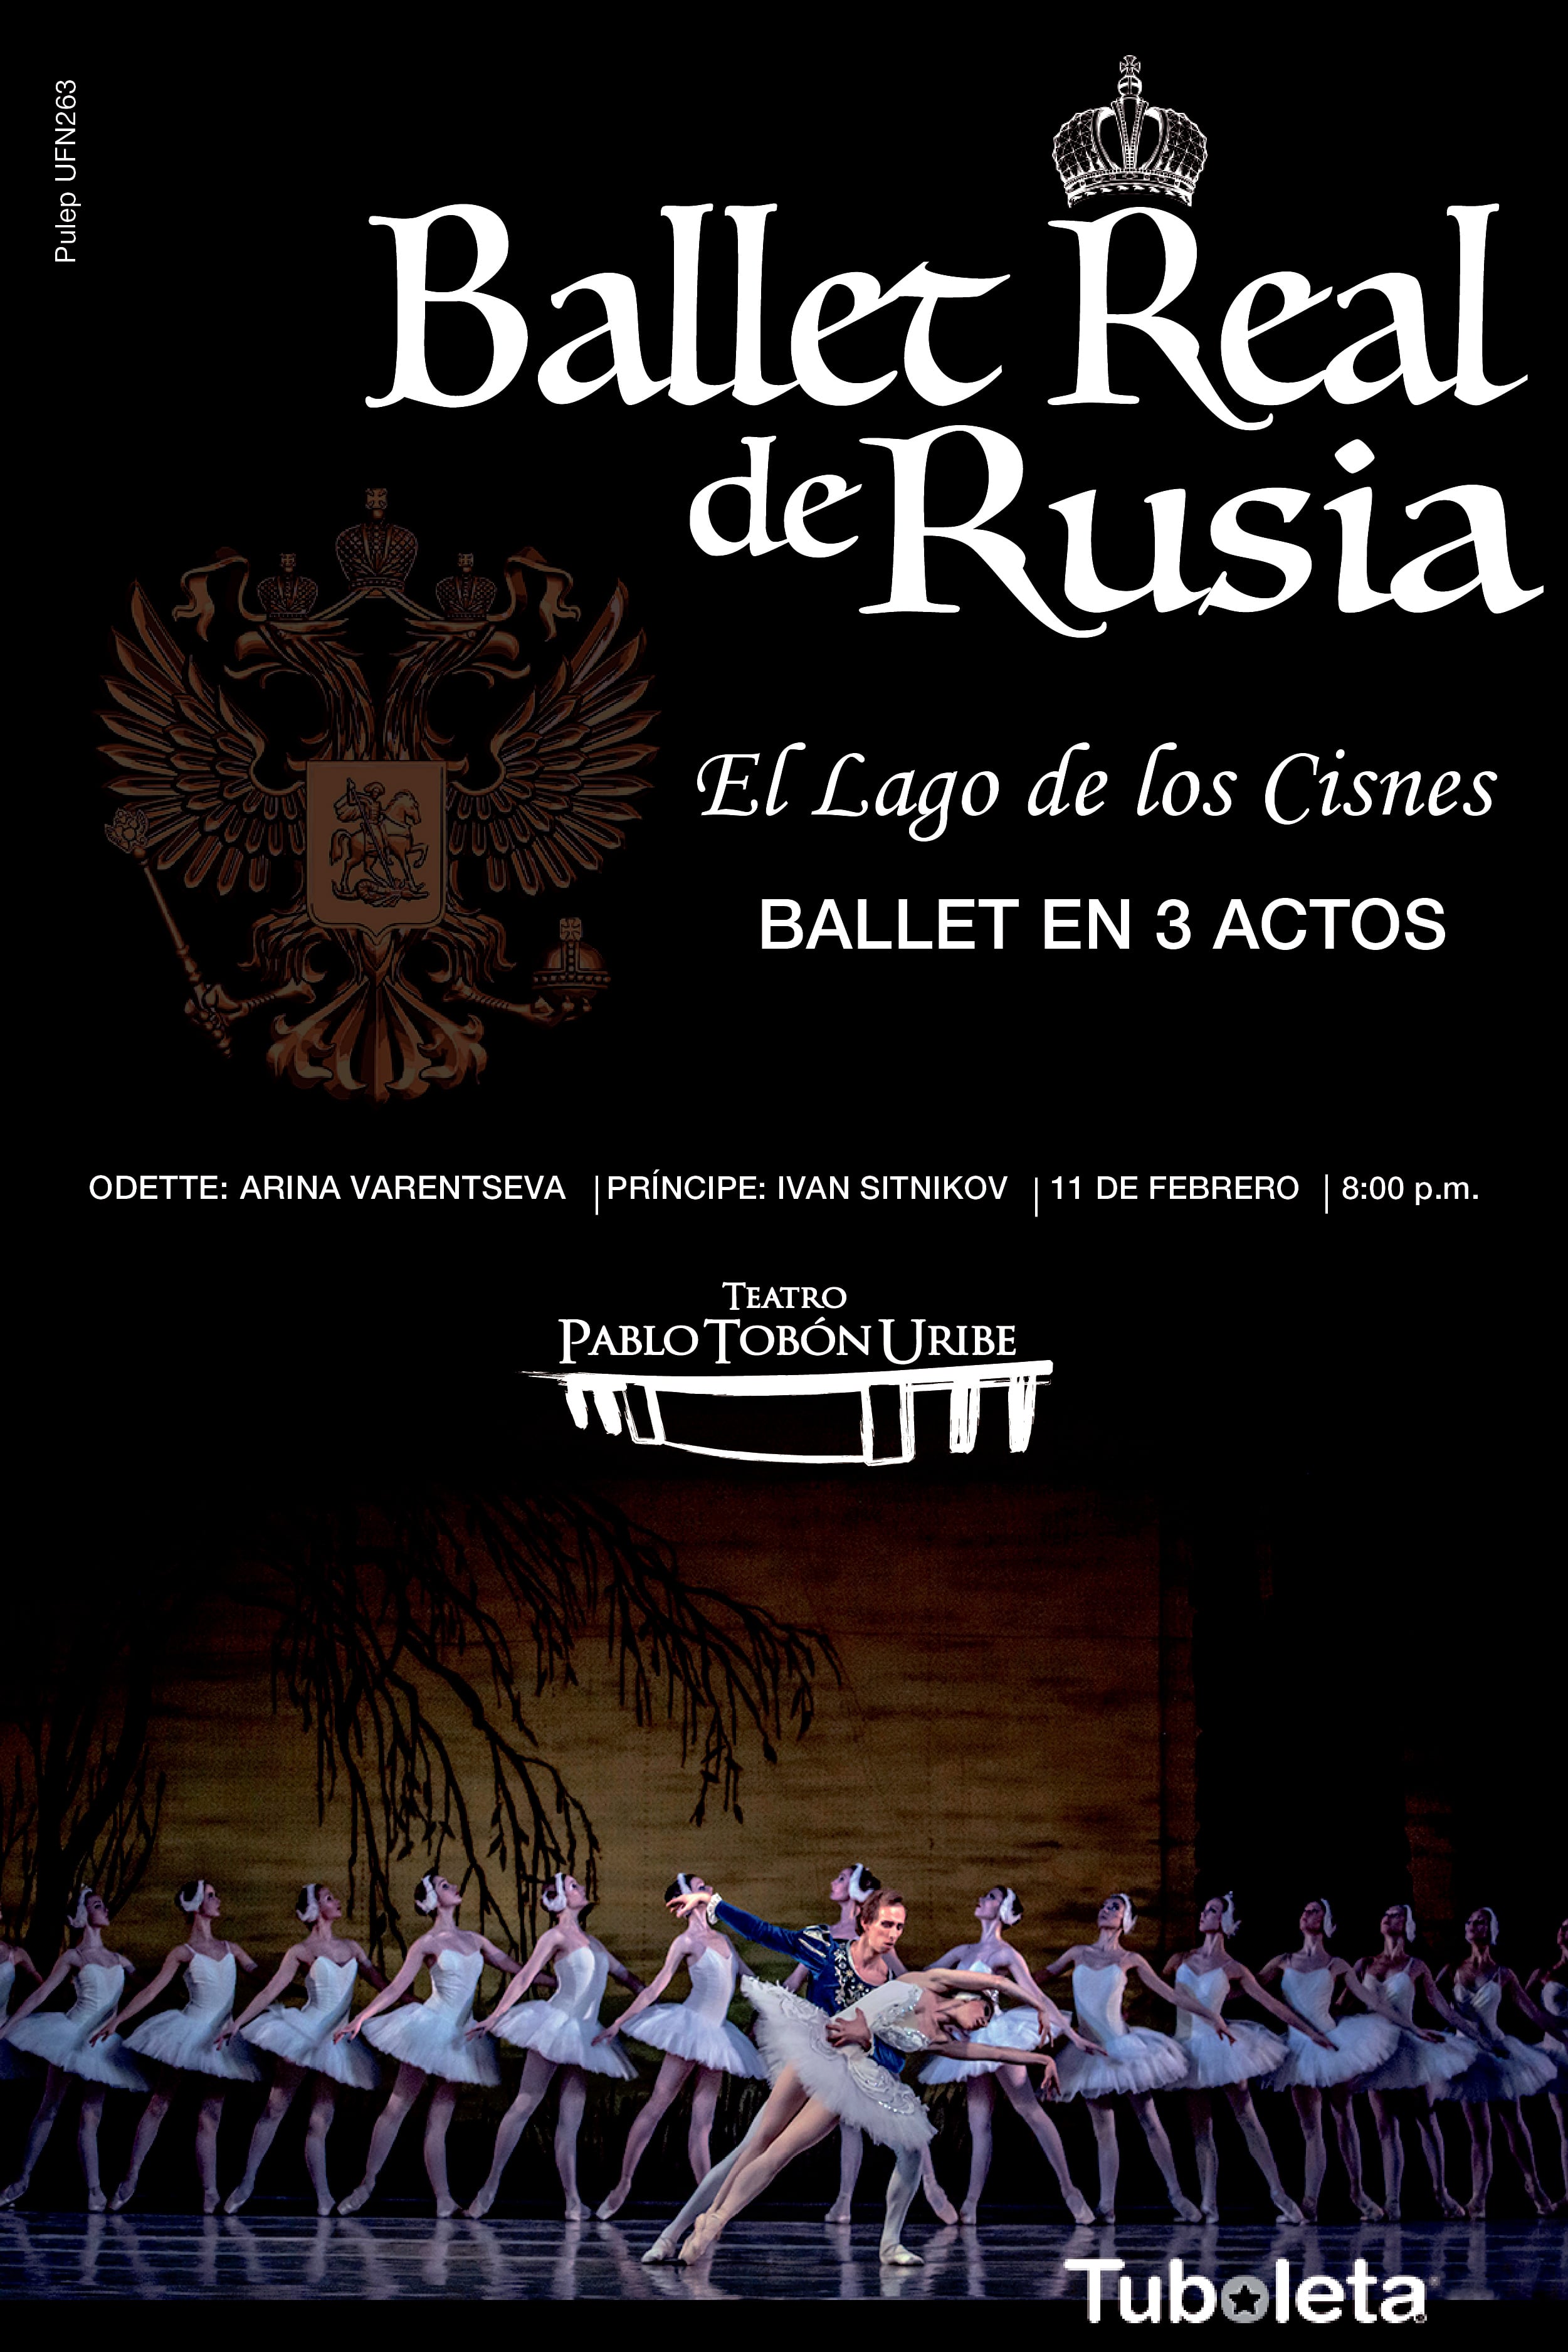 ballet real de rusia Post Facebook 01 min